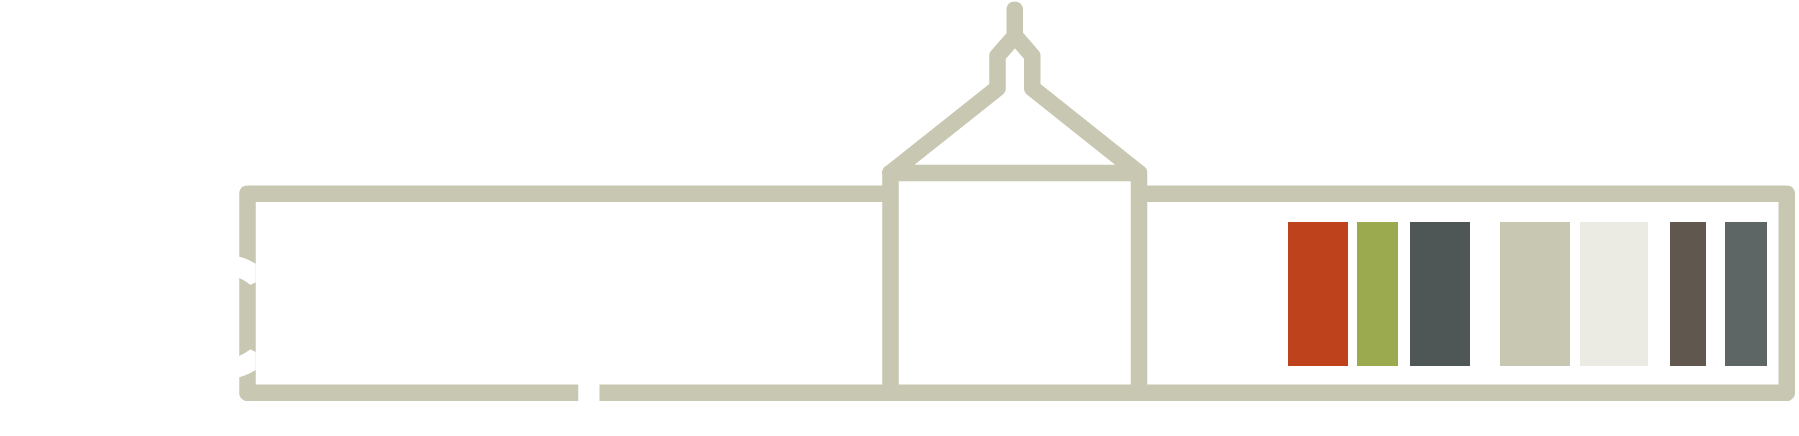 Logo - Factorij10